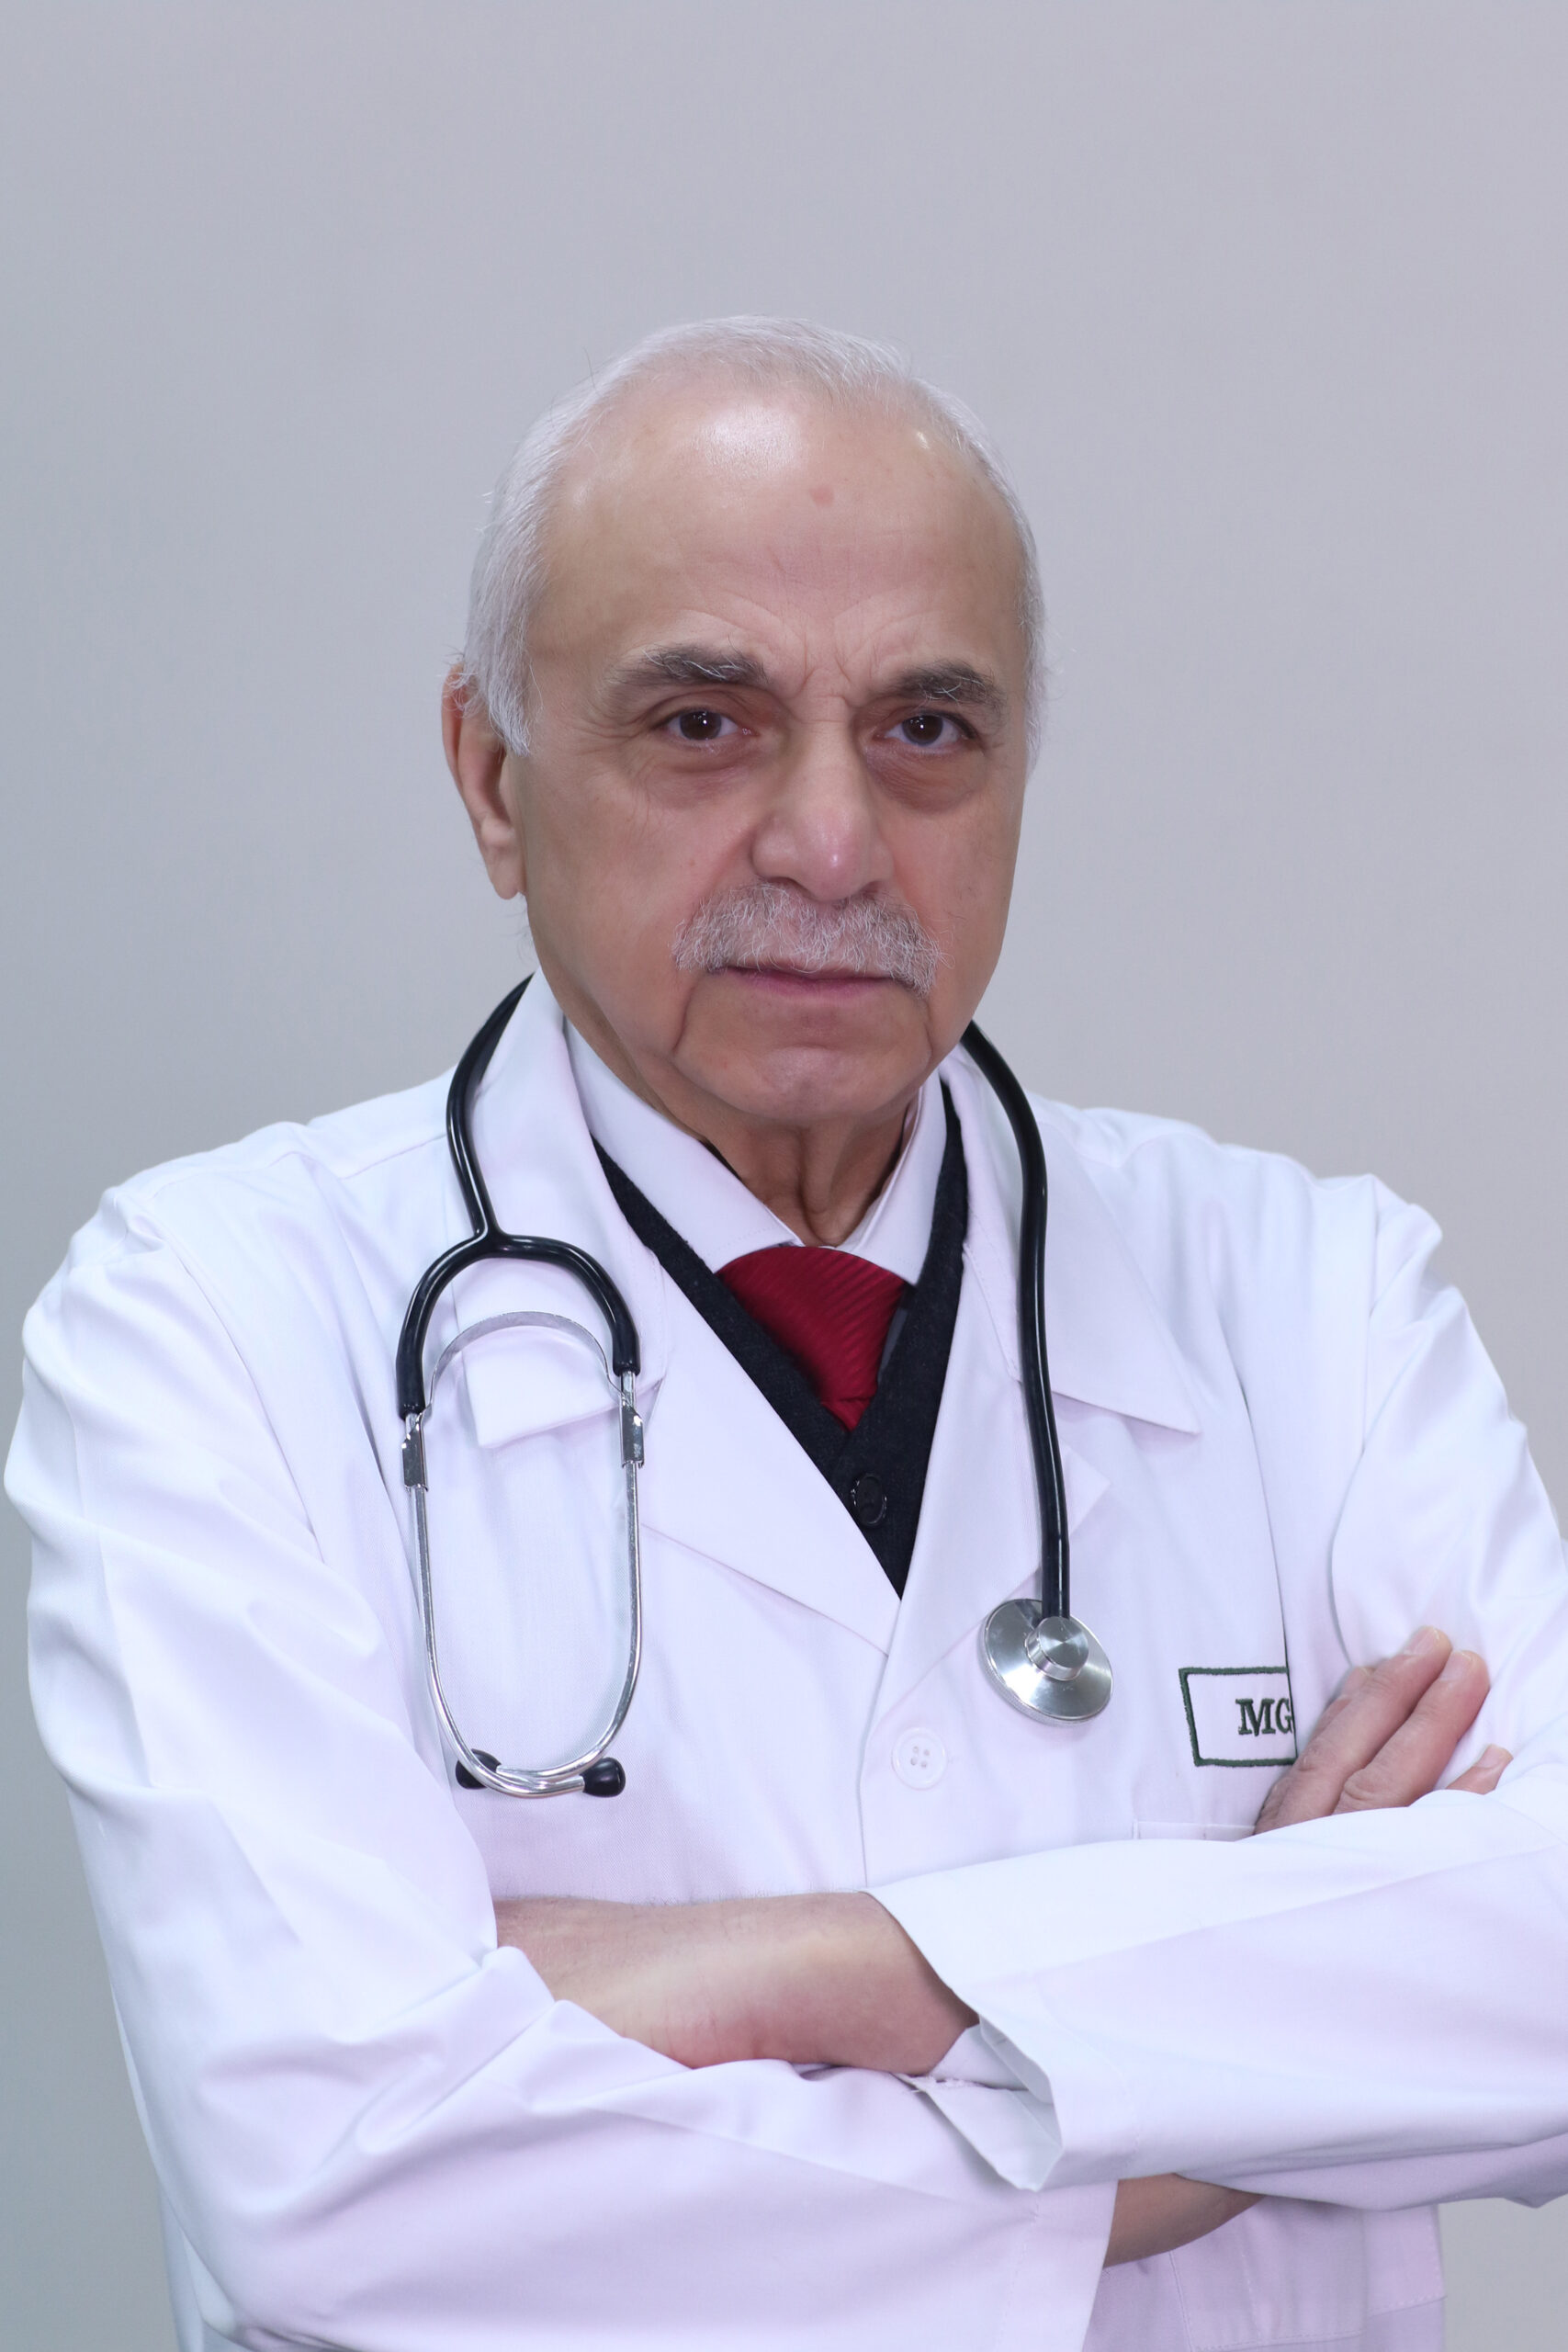 Abdulrahman El-Hout, MD